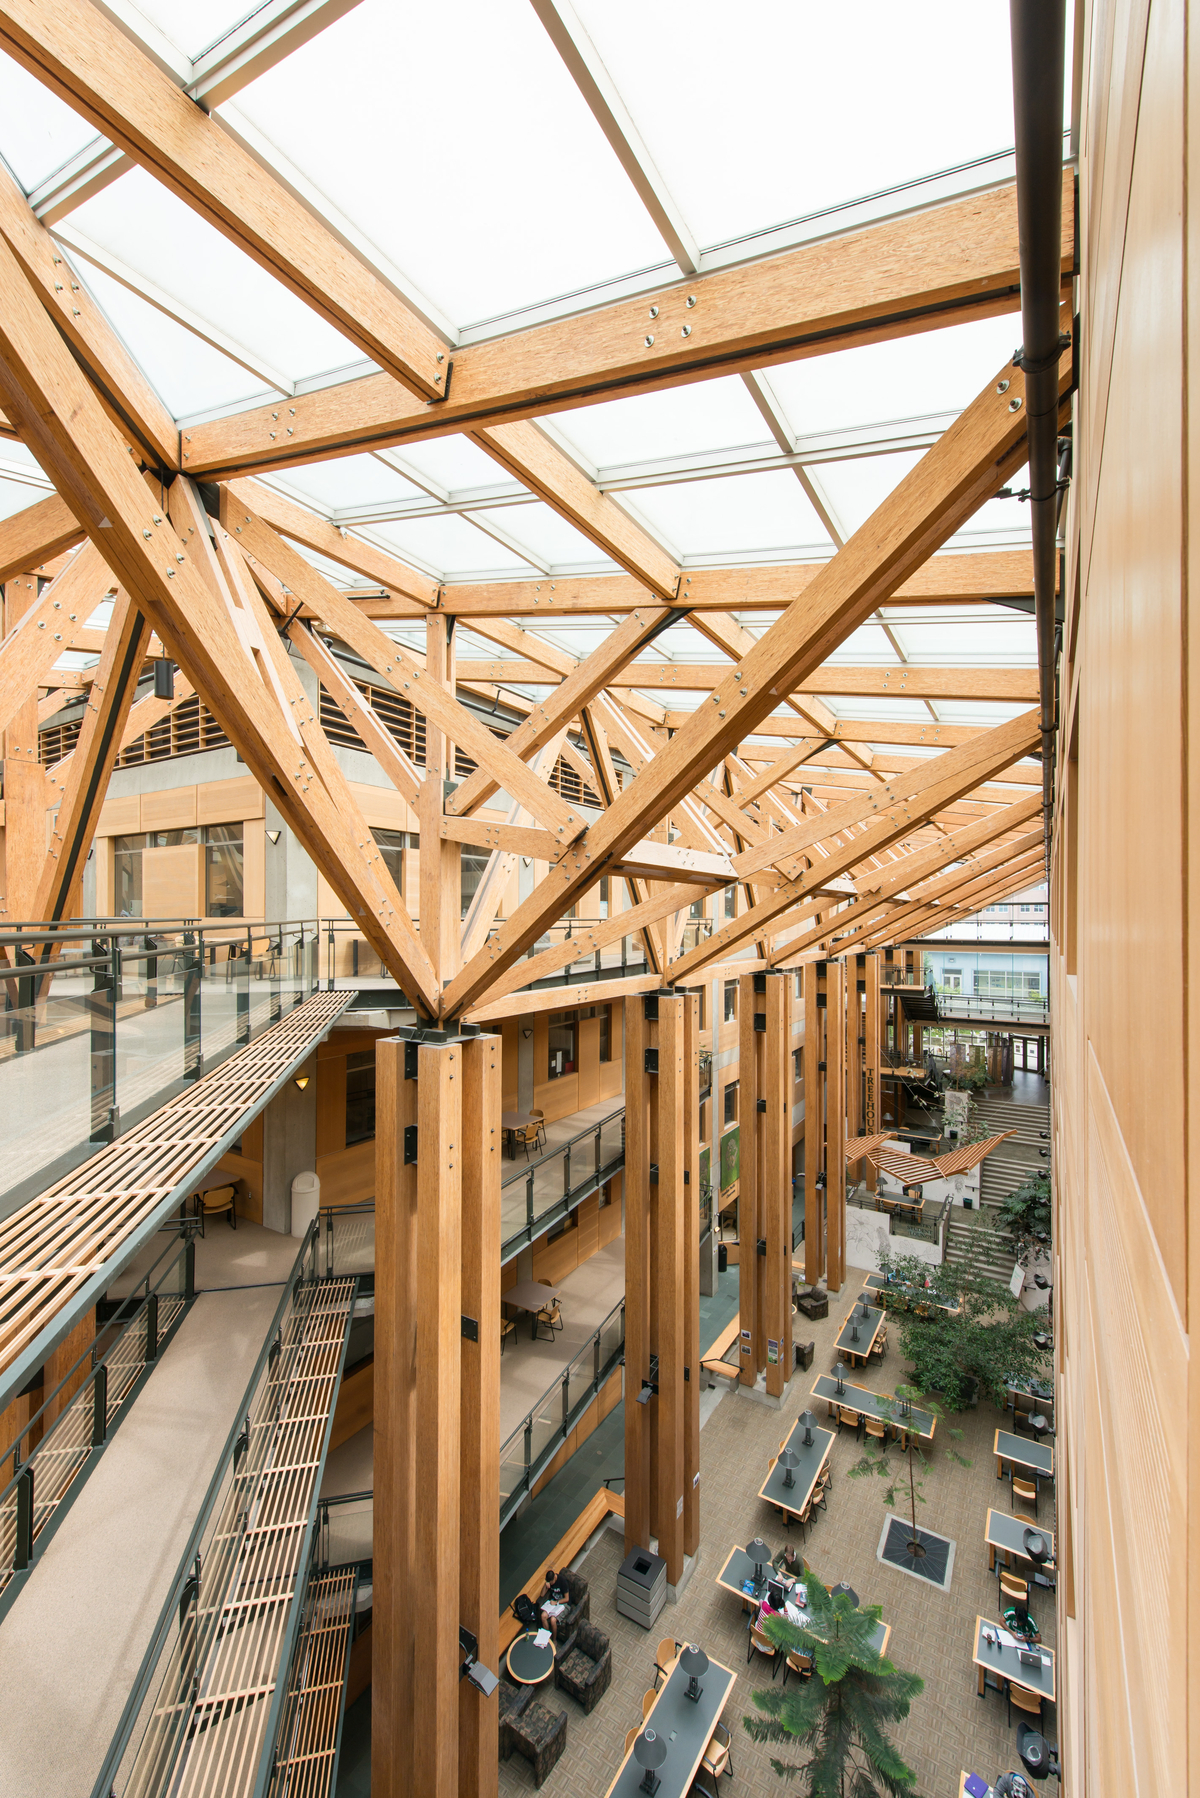 从步道往下看UBC森林科学中心多层中庭的室内白天景观，上面有大量木材和玻璃屋顶组成的复杂伞形支撑桁架